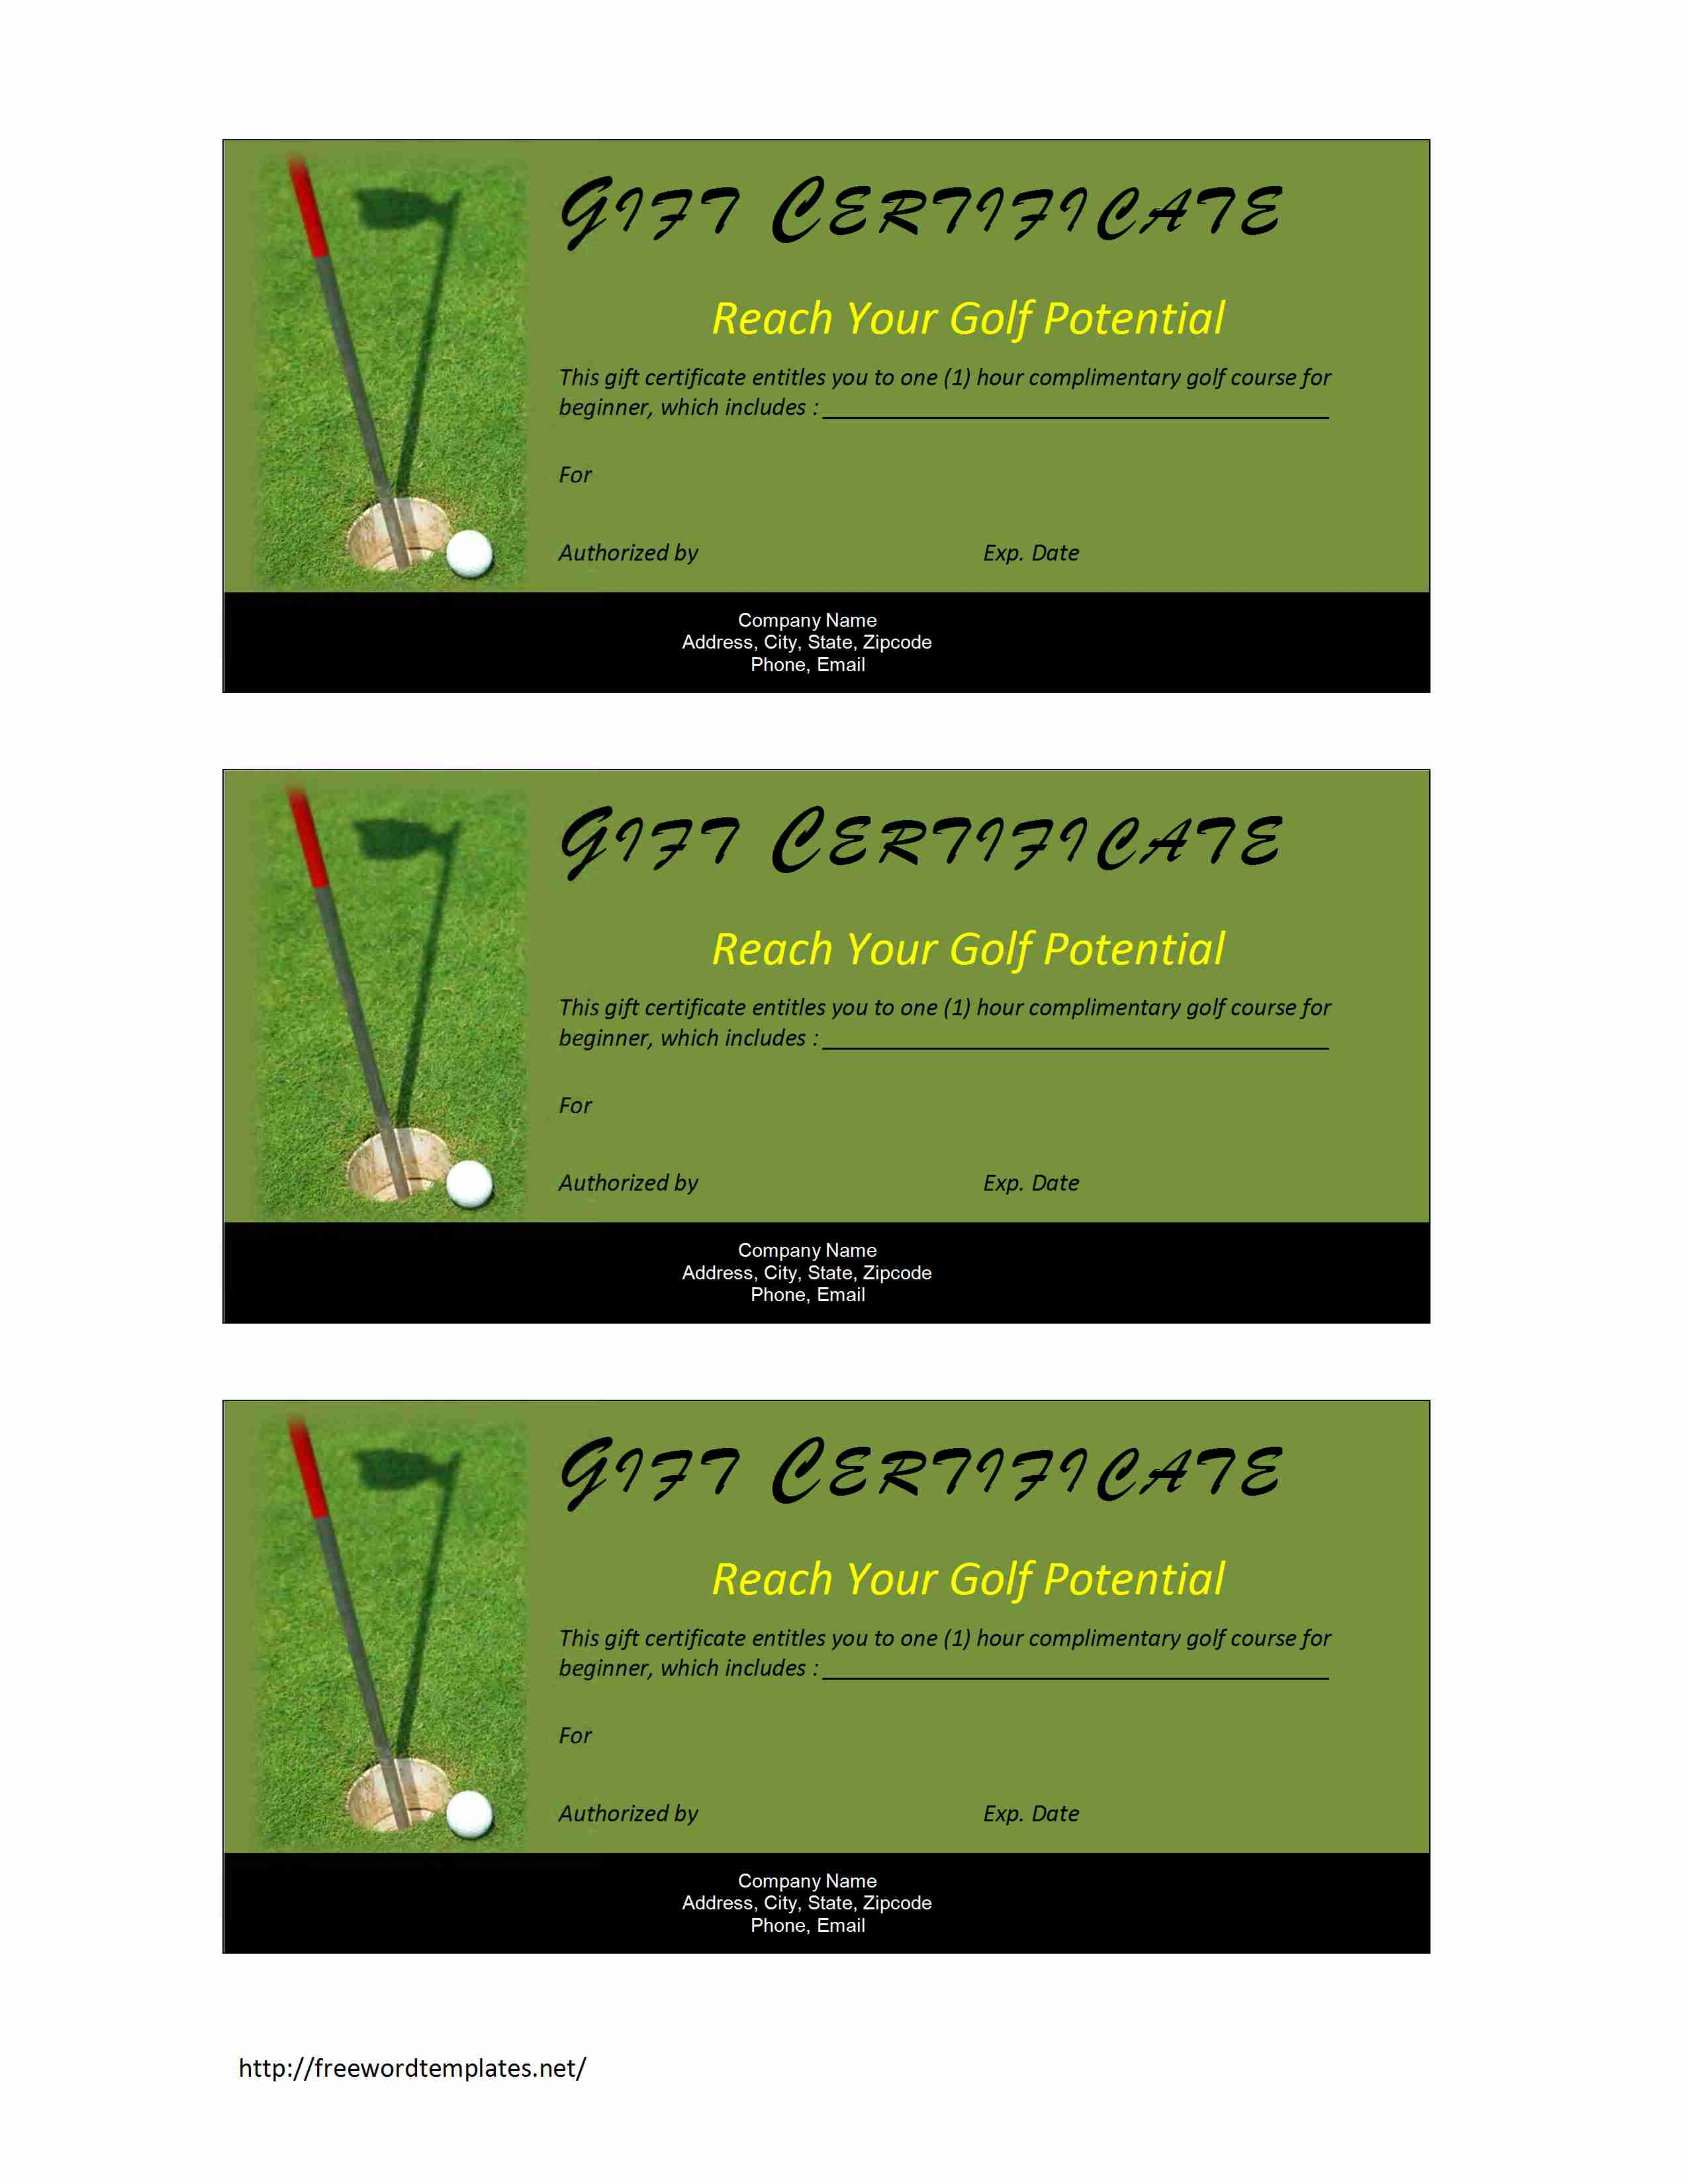 Golf Gift Certificate in Golf Gift Certificate Template